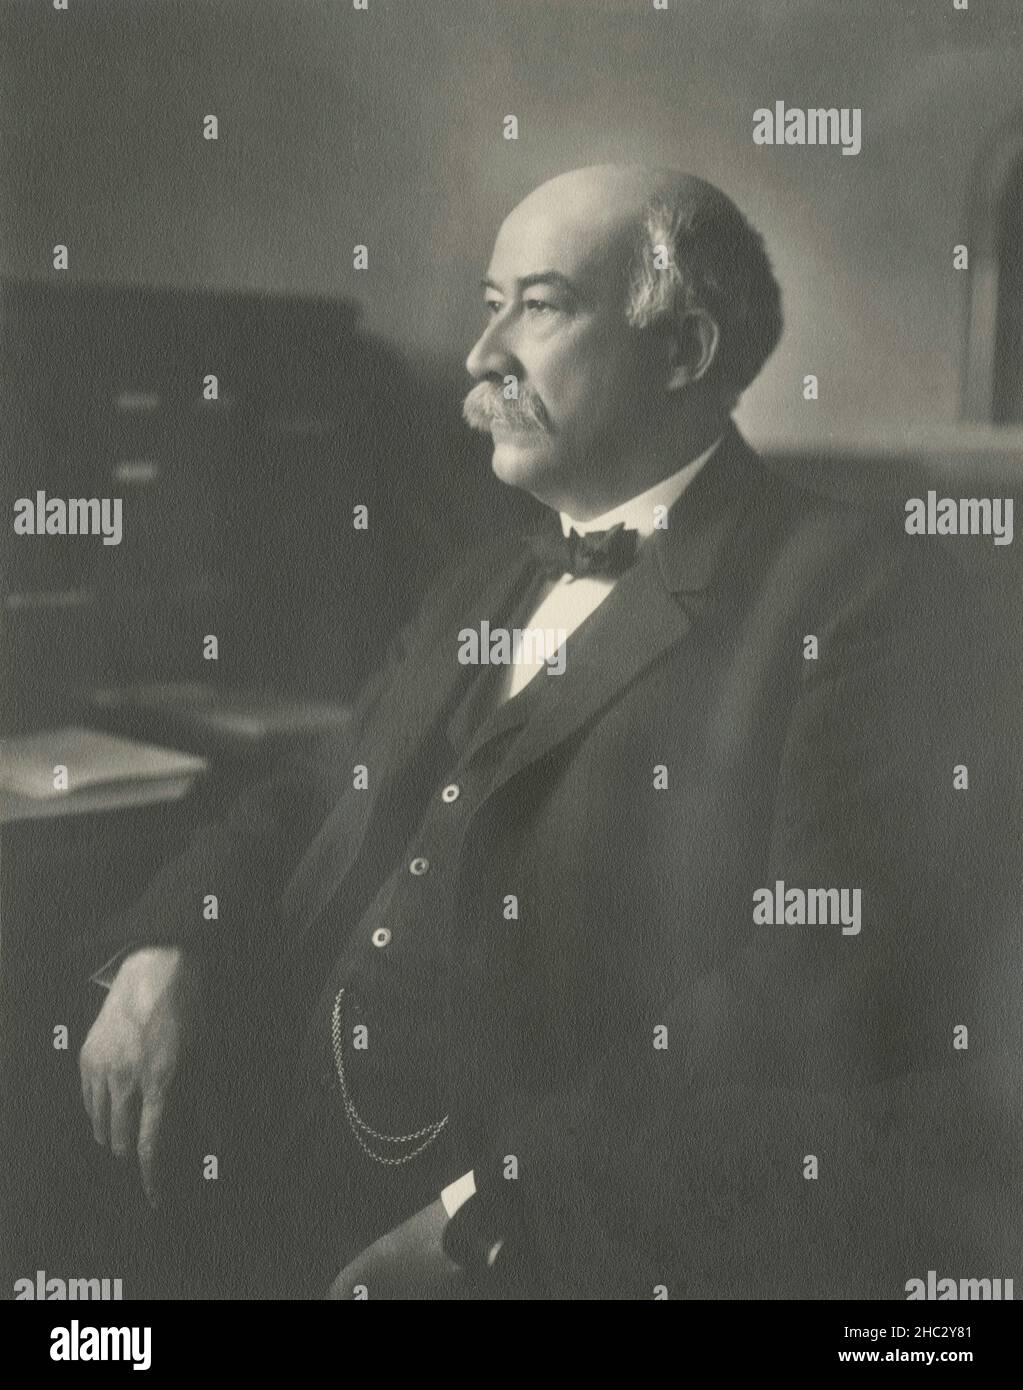 Photographie antique de c1910, James C. Kerwin.James Charles Kerwin (1850-1921) était avocat et juge américain du Wisconsin.Il a été juge de la Cour suprême du Wisconsin pendant les 16 dernières années de sa vie.SOURCE : TIRAGE PHOTOGRAPHIQUE ORIGINAL Banque D'Images